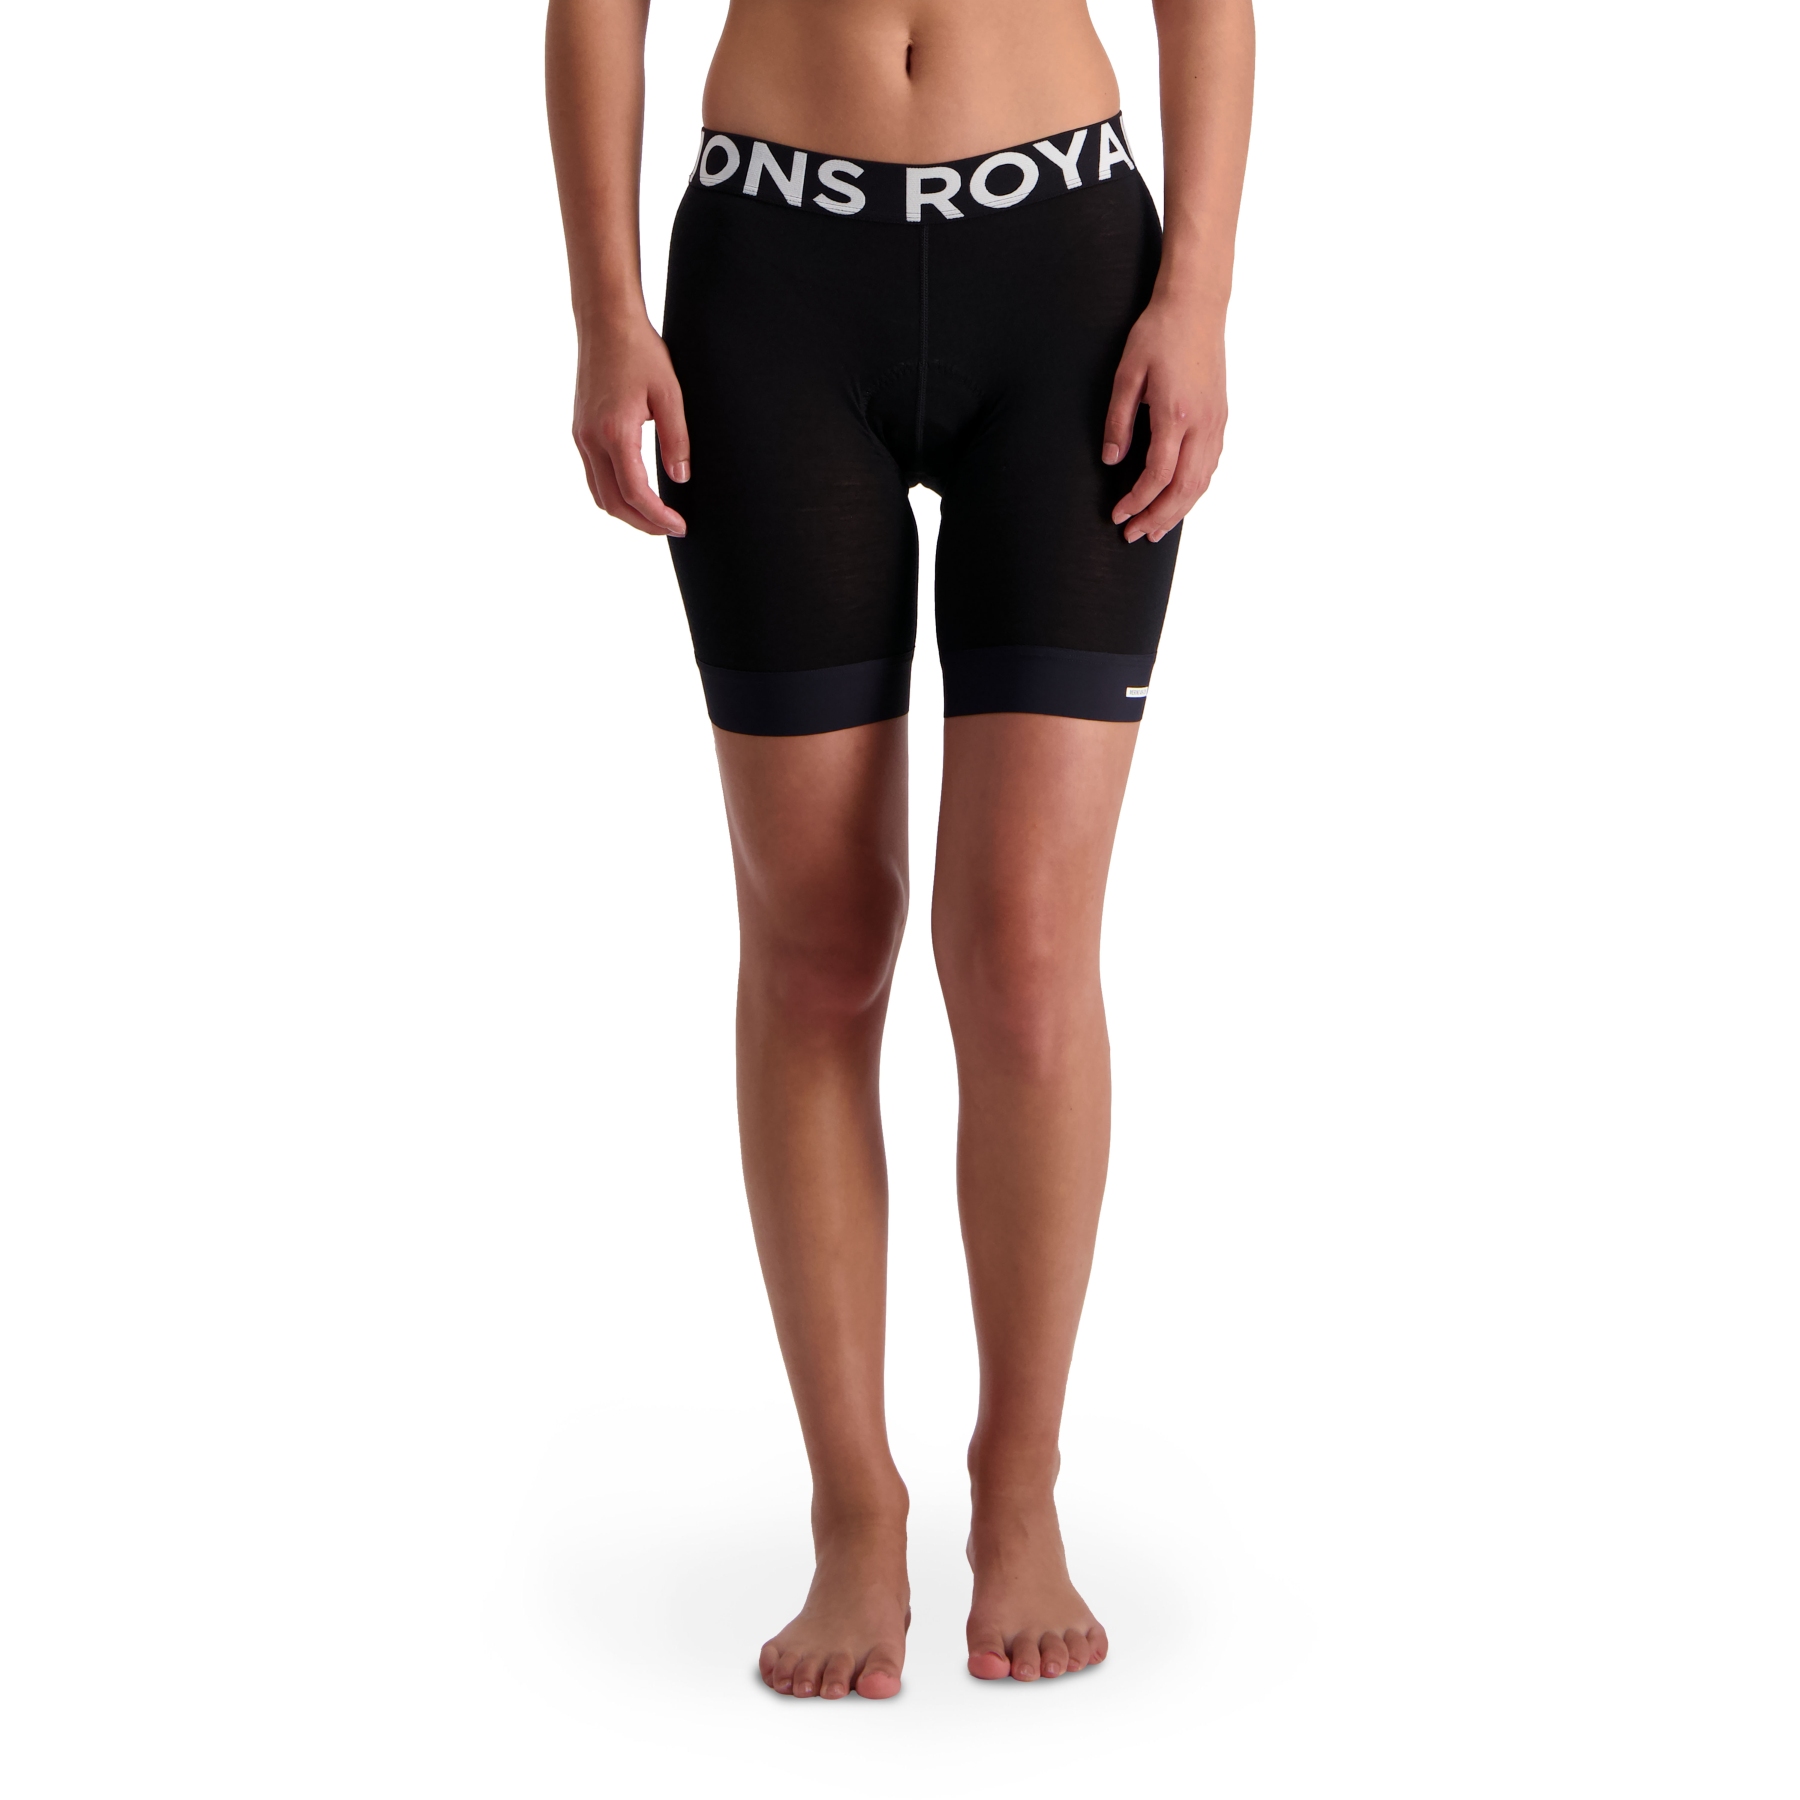 Produktbild von Mons Royale Enduro Bike Unterhose Damen - schwarz